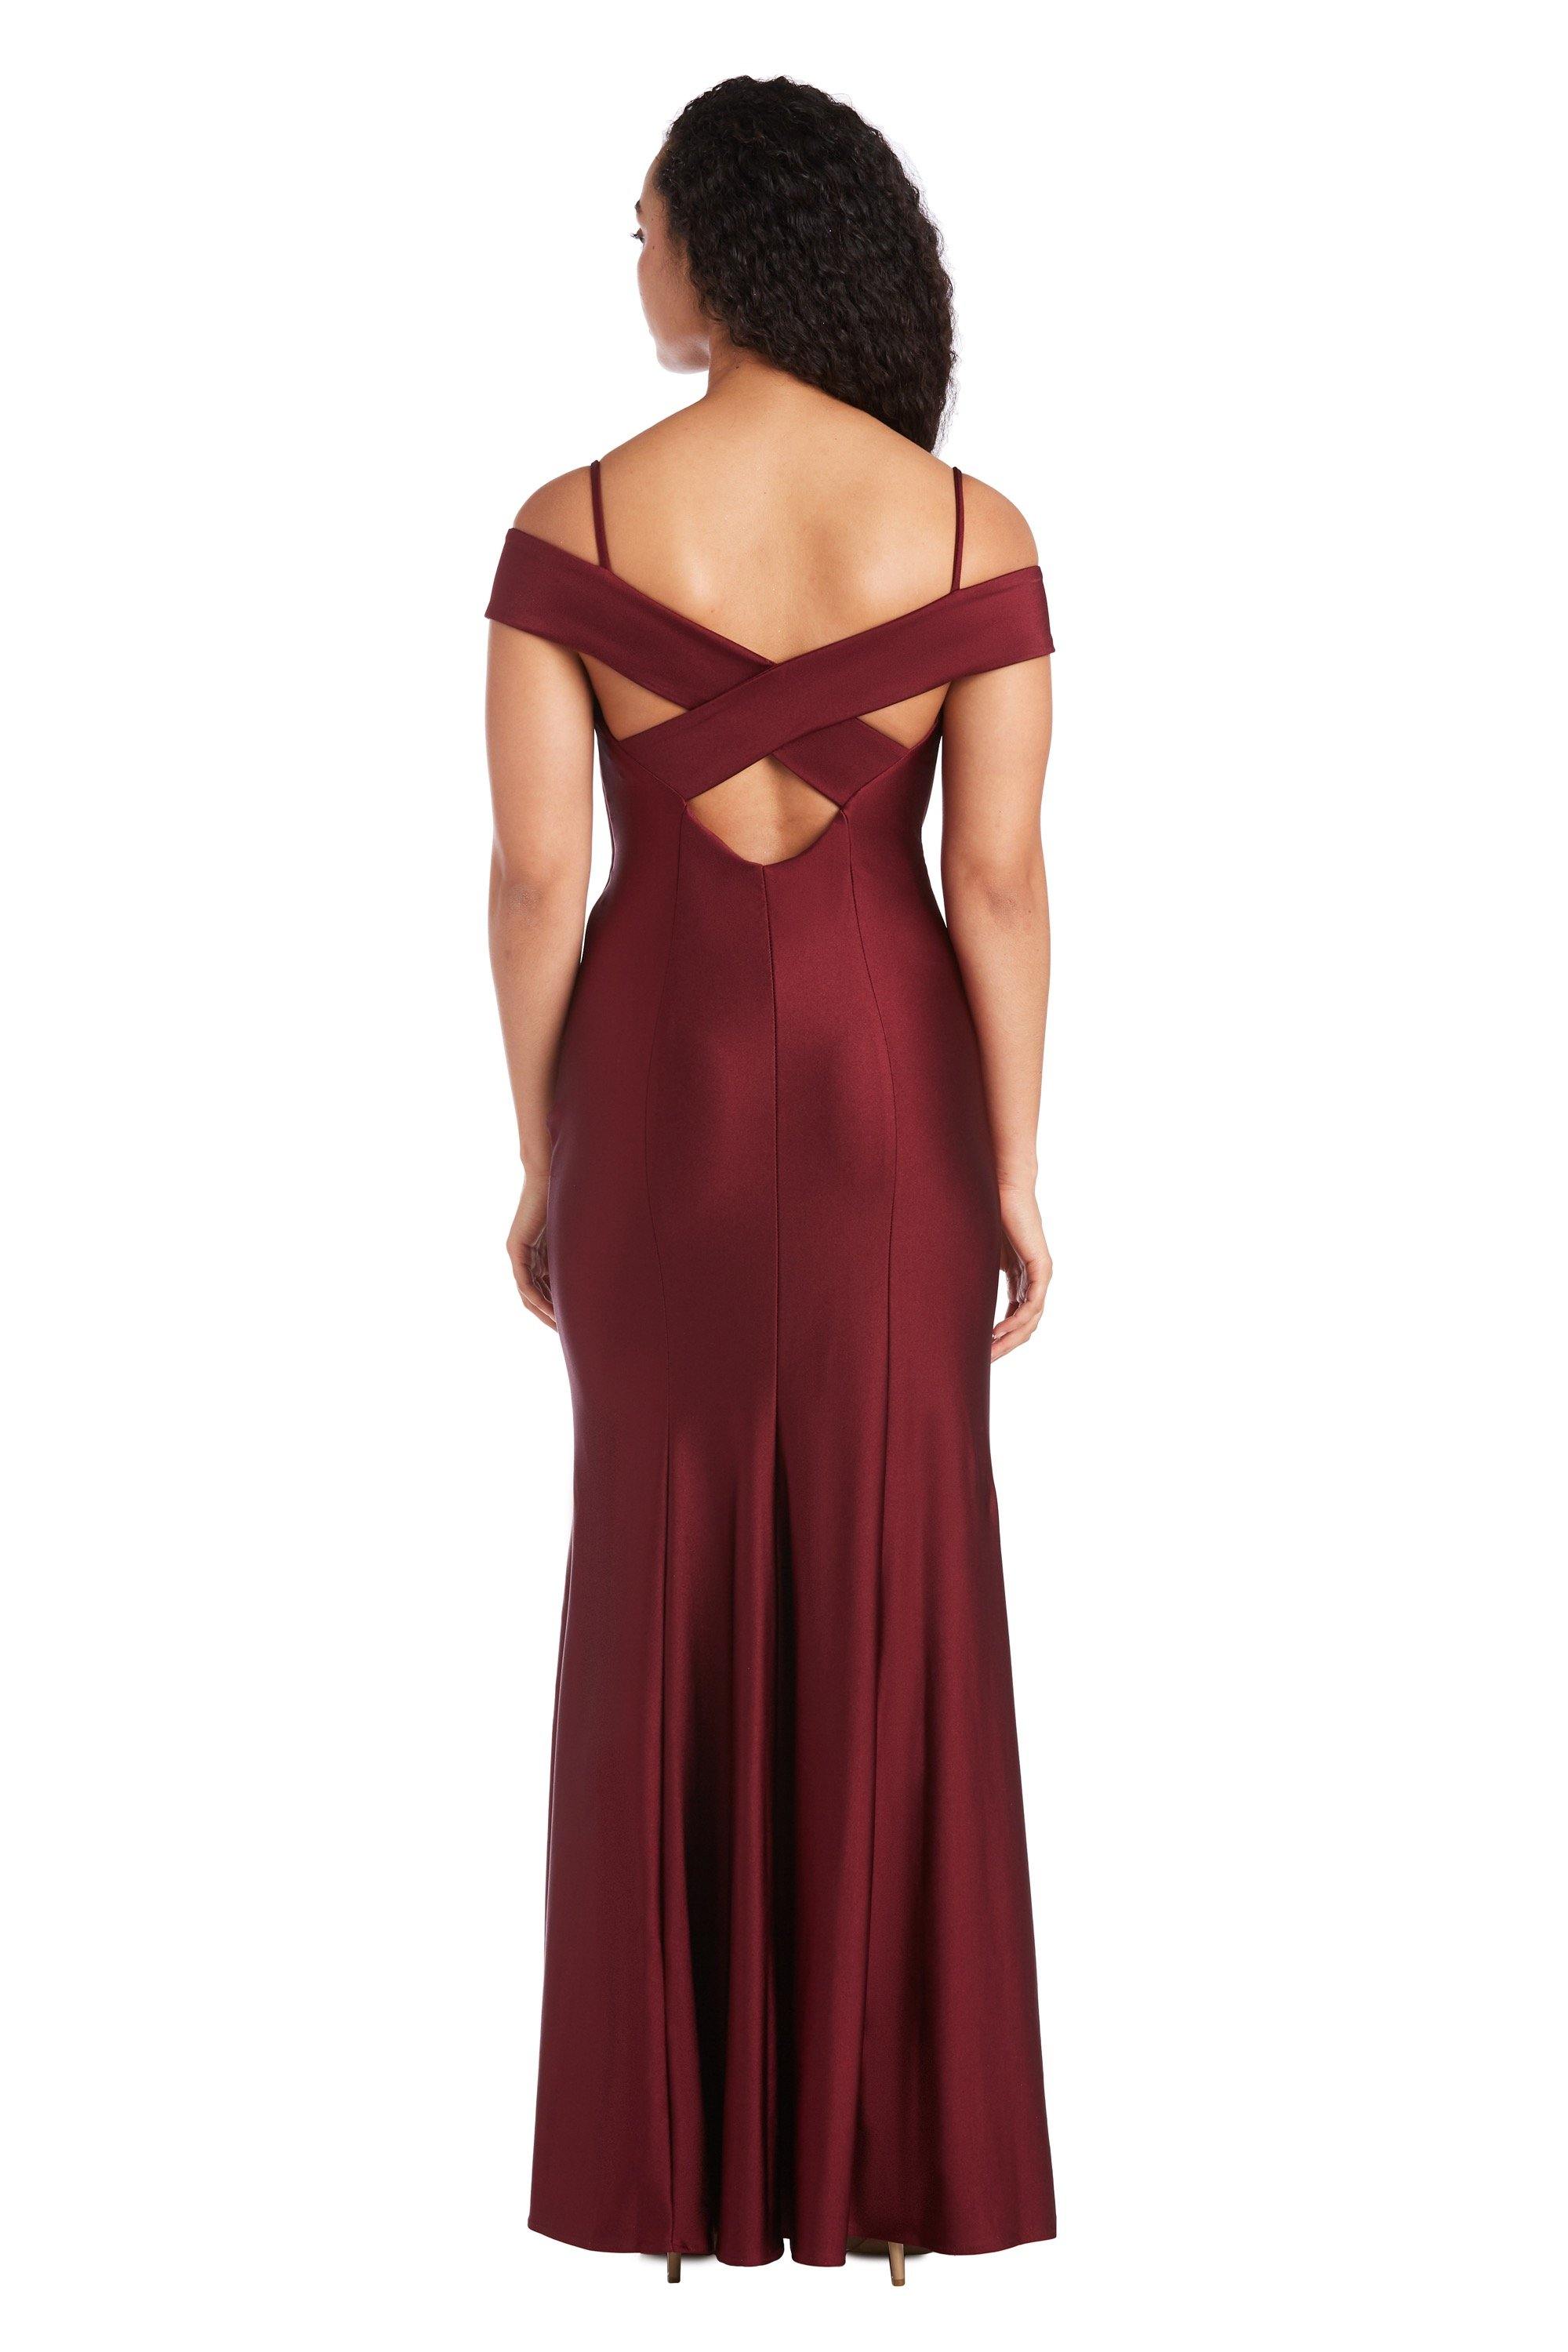 Morgan & Co. Long Formal Off Shoulder Dress 21942J - The Dress Outlet